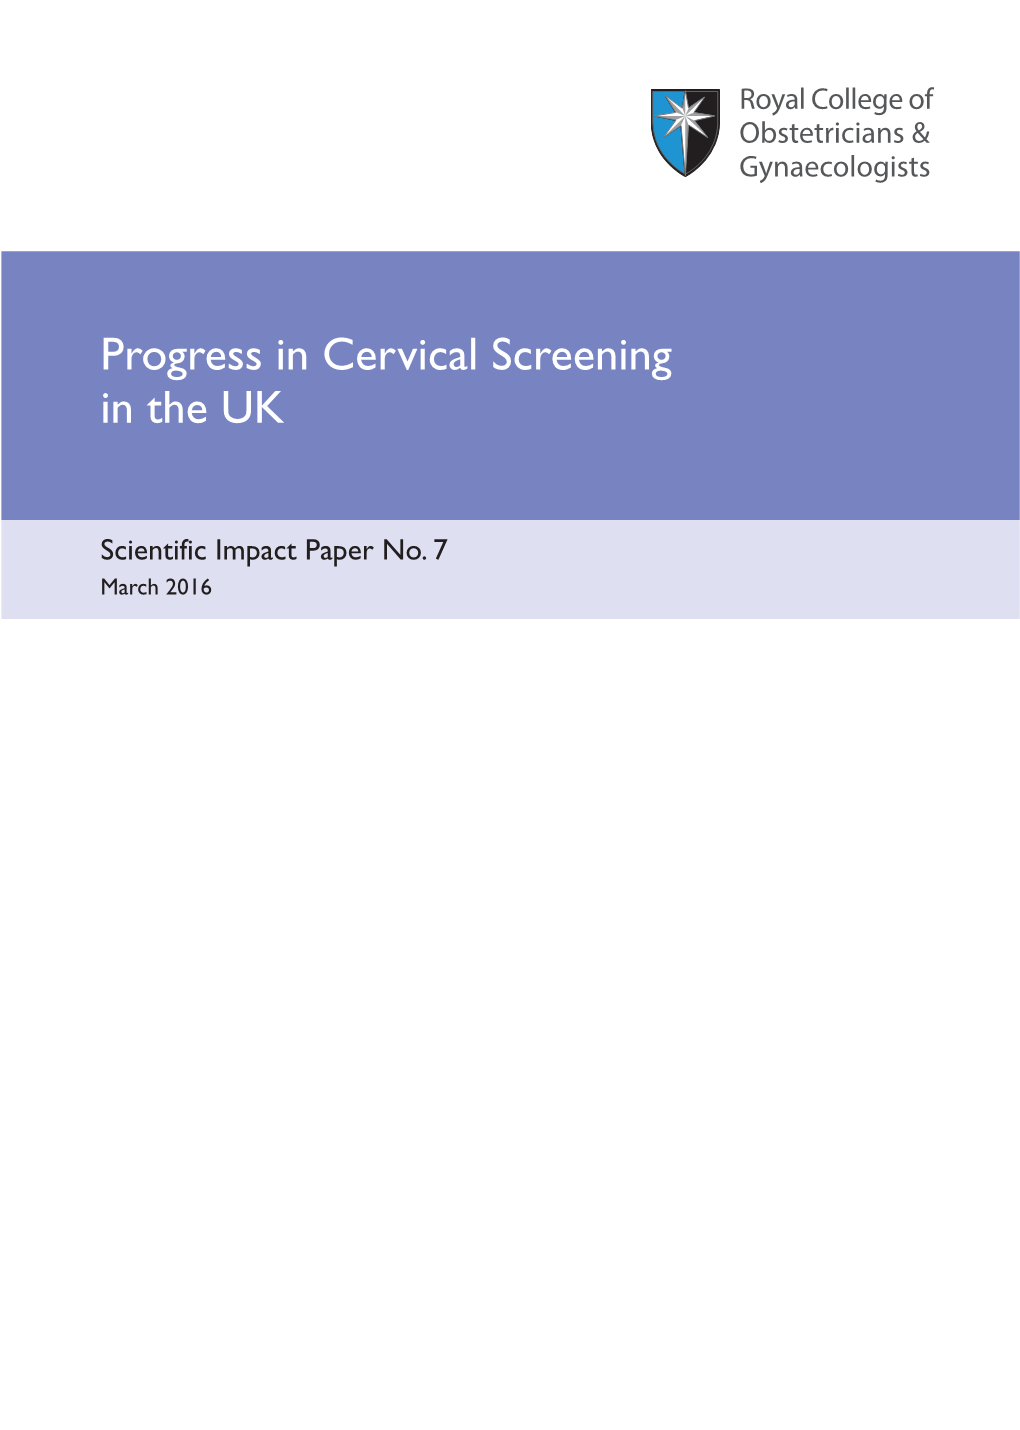 Progress in Cervical Screening in the UK